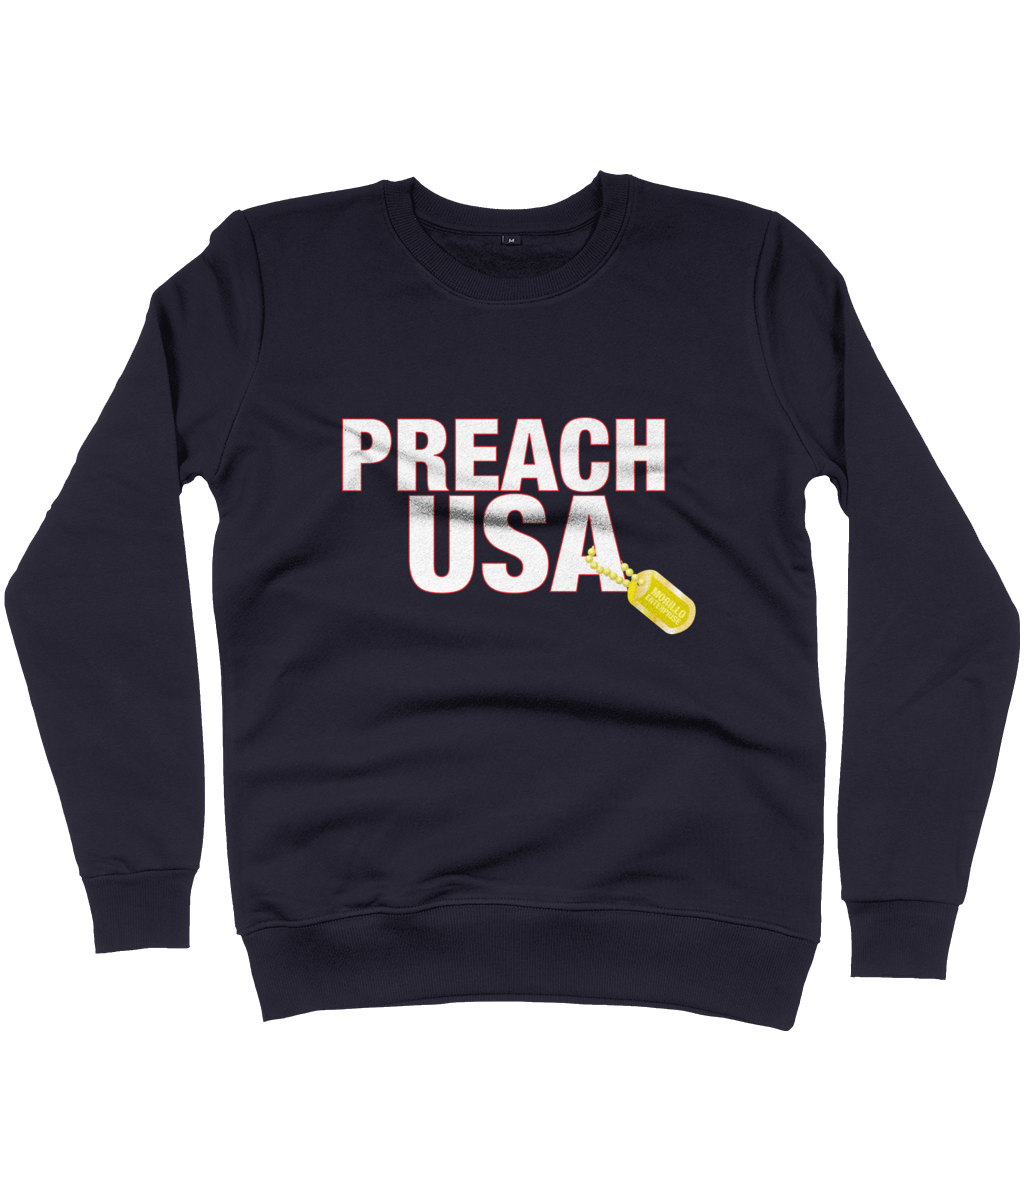 PREACH USA LOGO SWEATSHIRT Clothing - MORILLO ENTERPRISE 